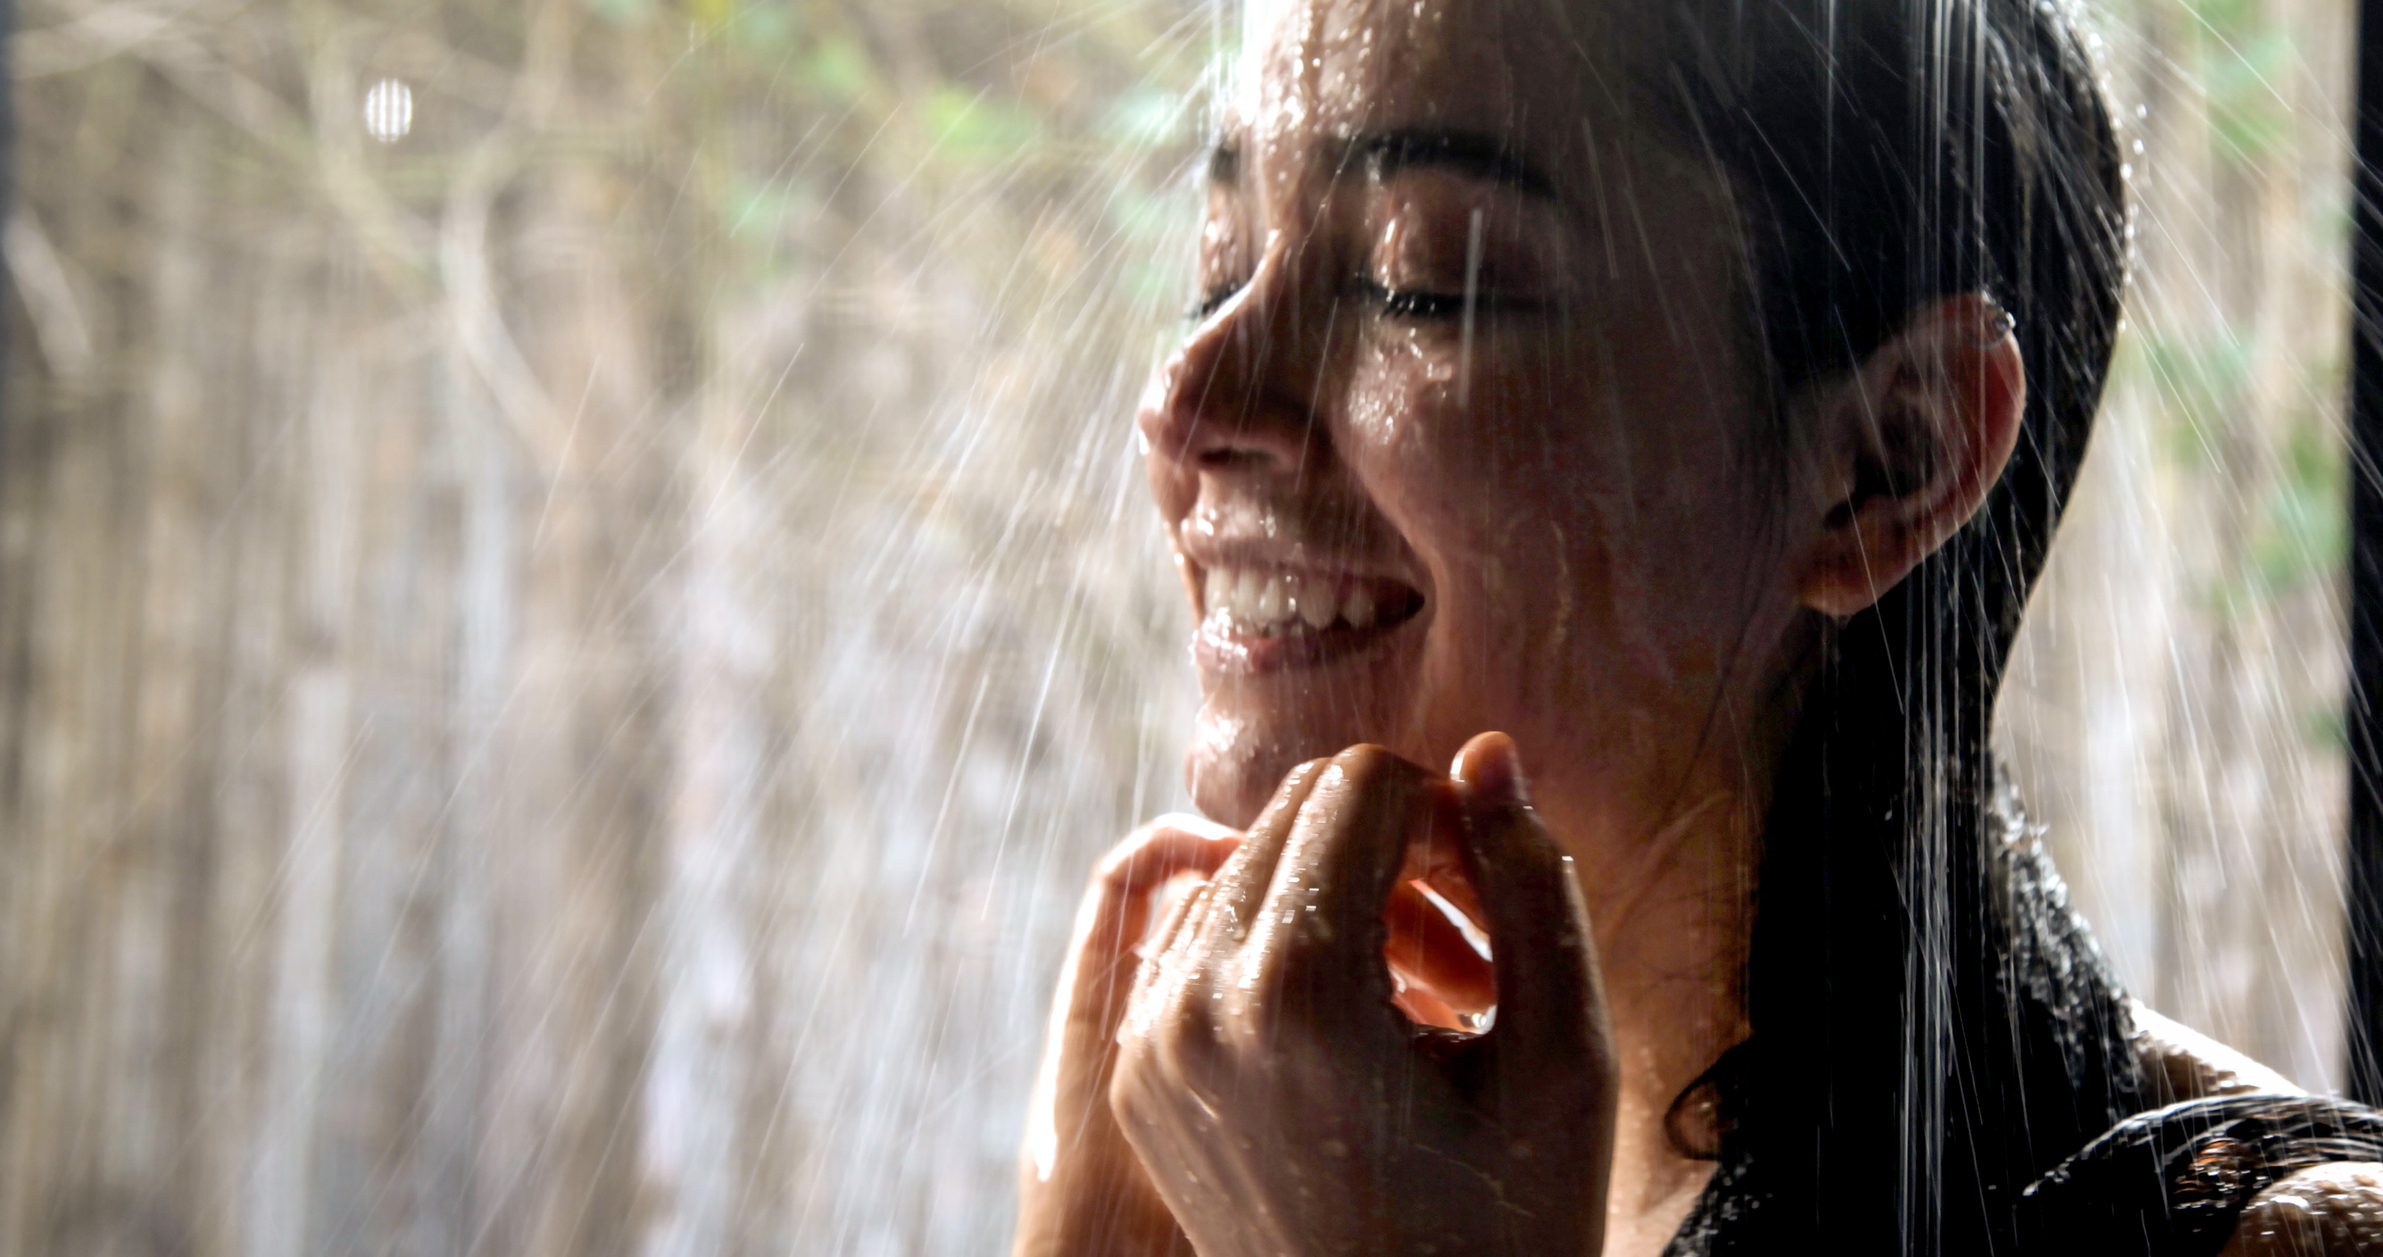 Una persona sonríe mientras se da una ducha.